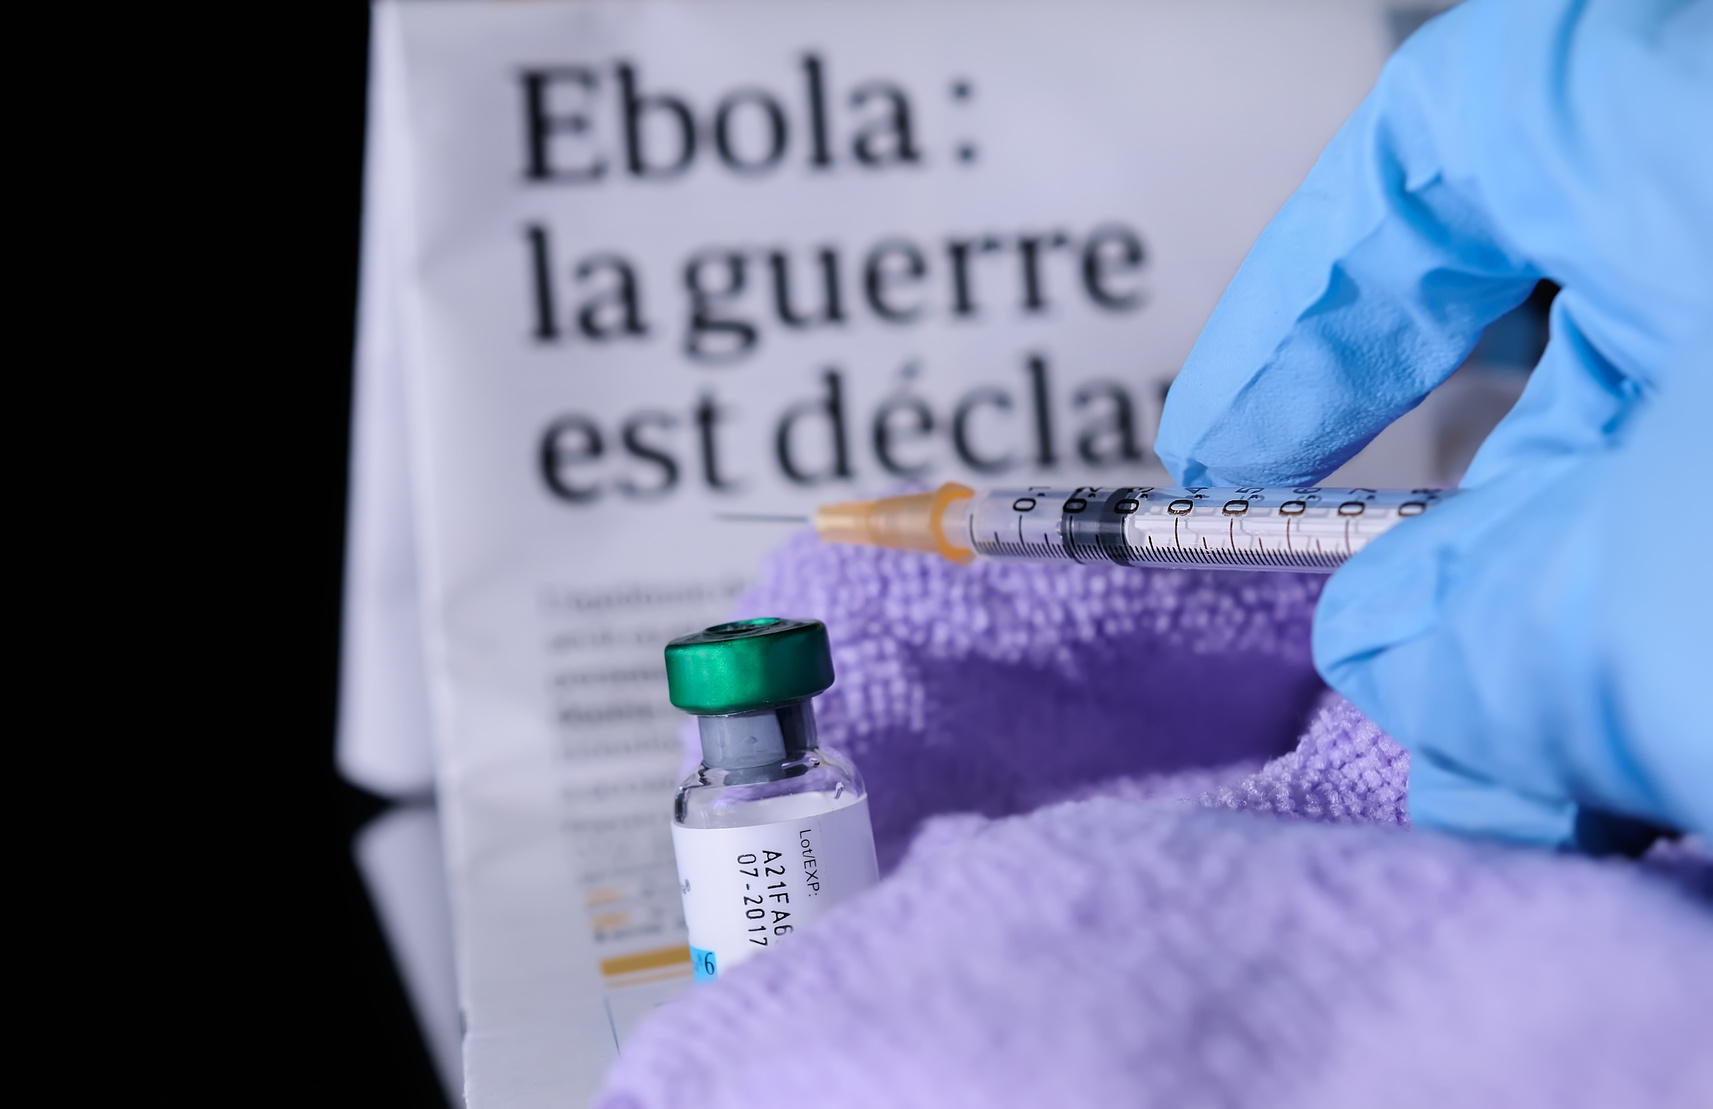 Depuis le 1er août 2018, le virus Ebola a causé plus de 1.800 décès en République démocratique du Congo. En juillet dernier, l'OMS a qualifié l'épidémie « d'urgence sanitaire mondiale ». © ursule, Fotolia